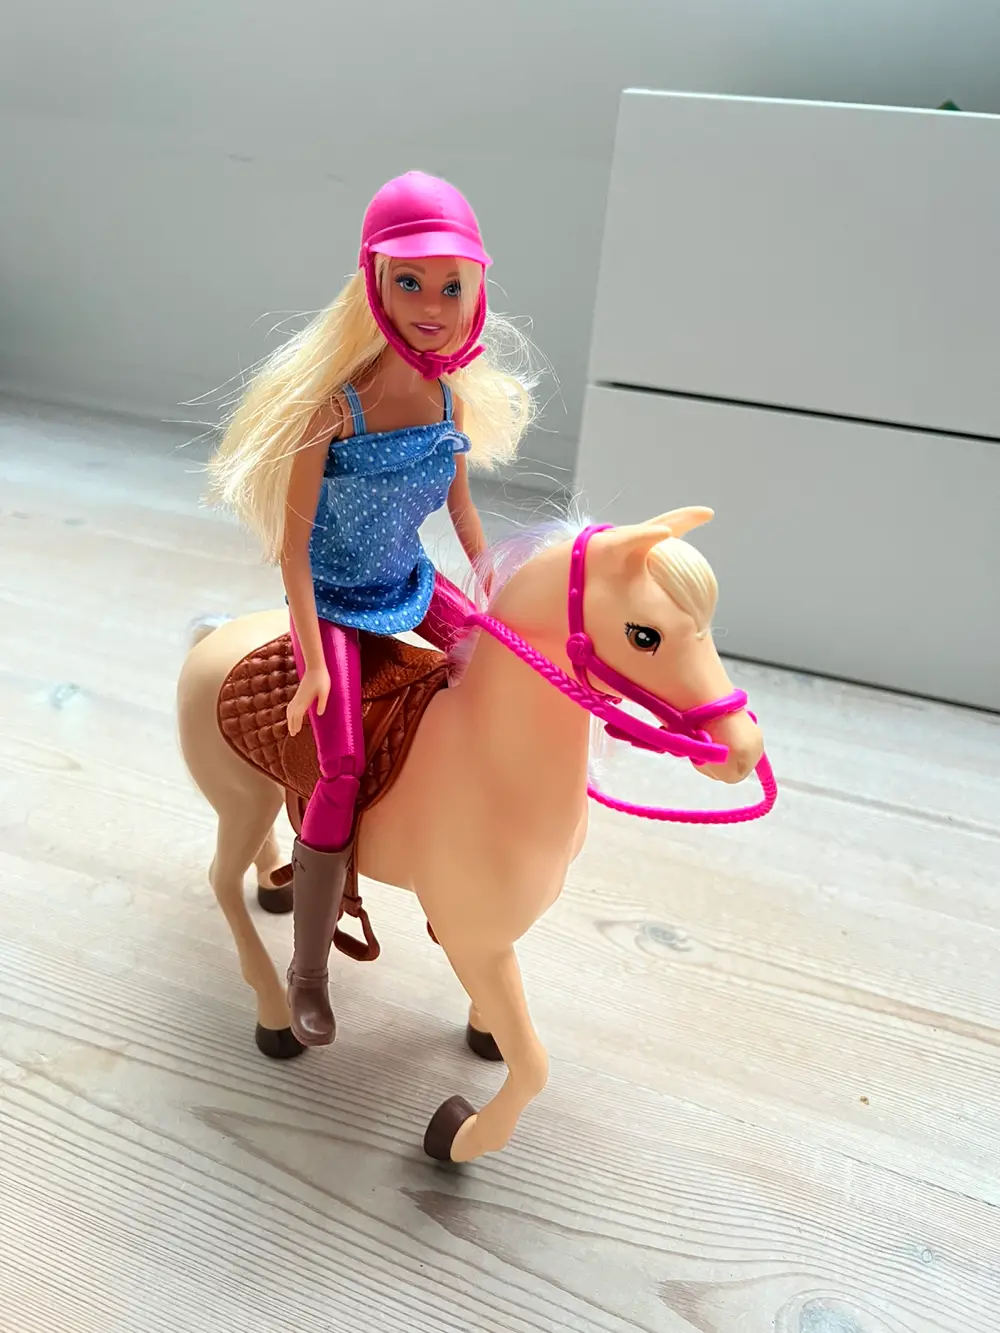 Køb Barbie Hest af Janne på Reshopper · Shop secondhand mor og bolig